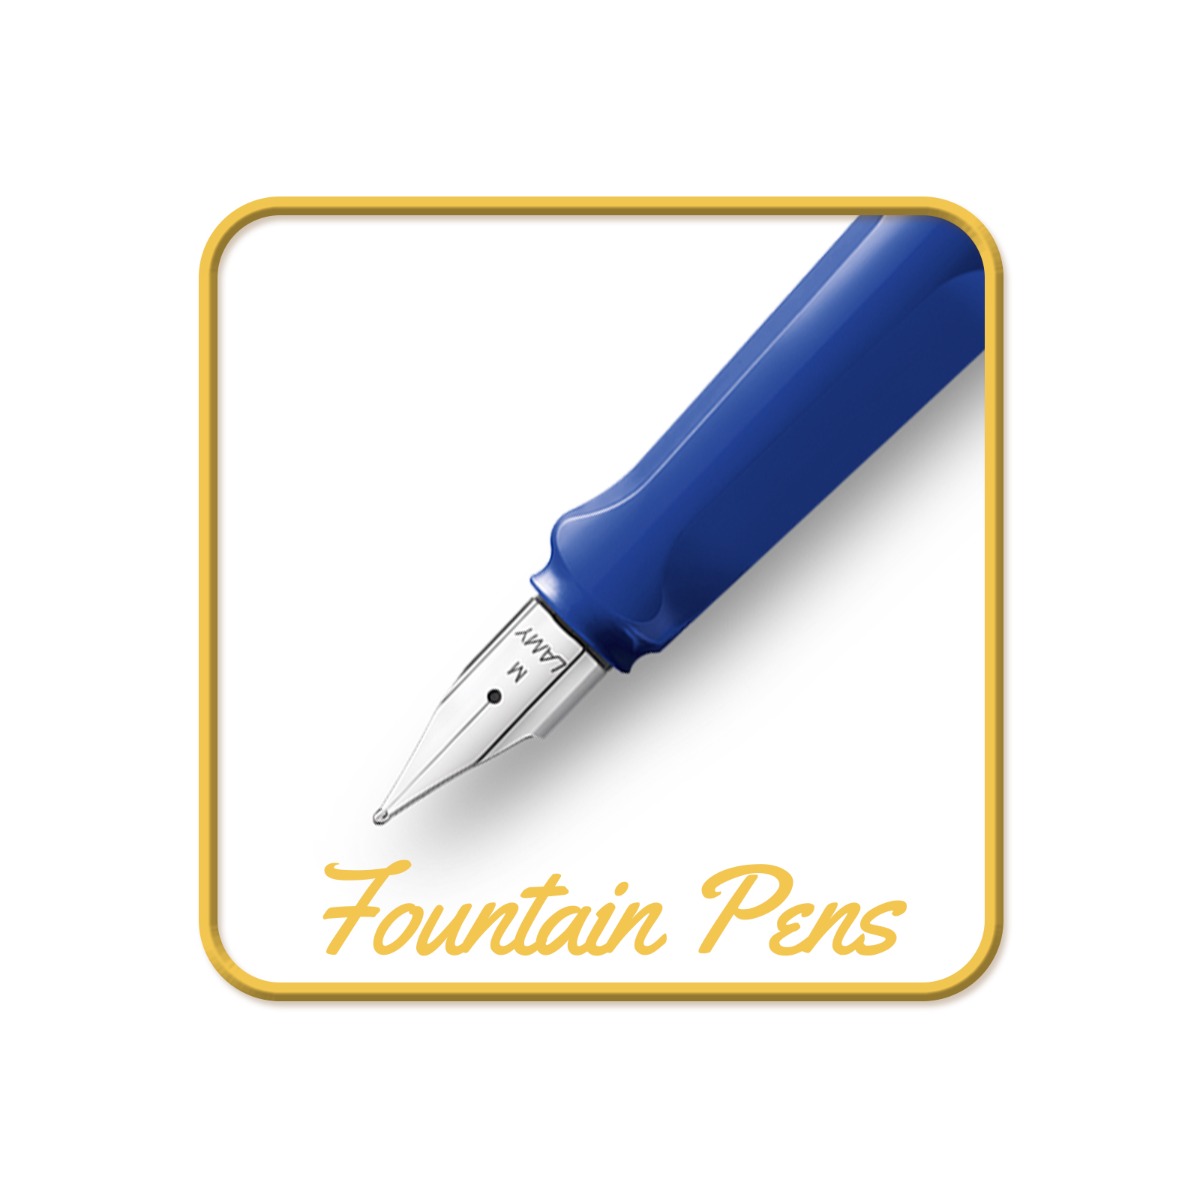 LAM_Fountain_Pens_4